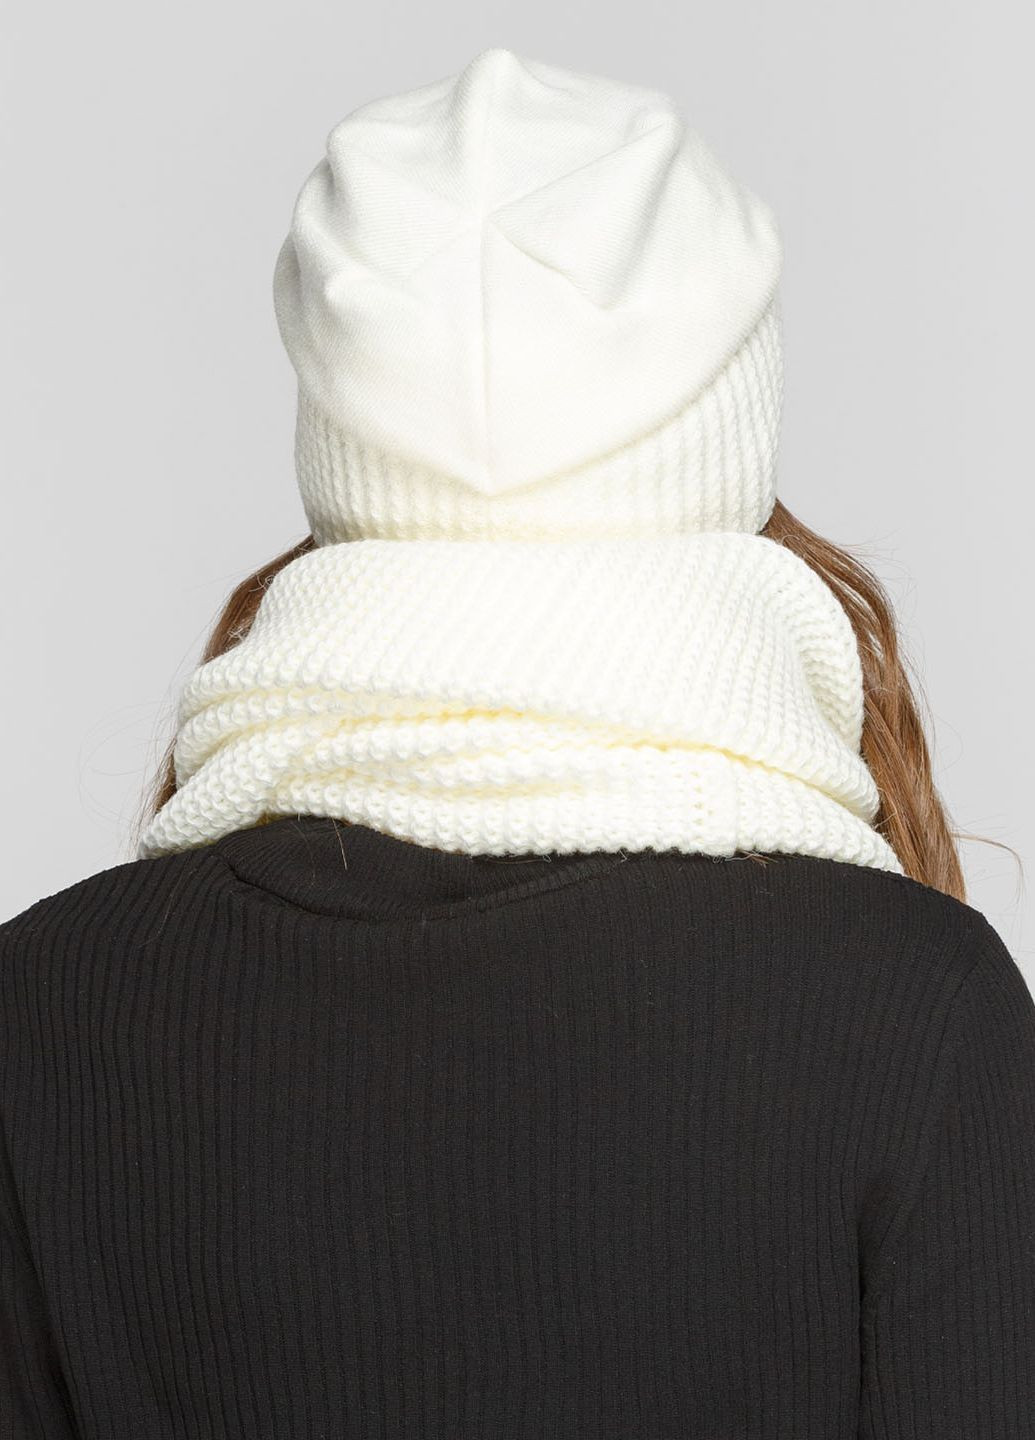 Теплый зимний комплект (шапка, шарф-снуд) на флисовой подкладке 660407 DeMari 77 Ненси шапка + шарф однотонные молочные кэжуалы шерсть